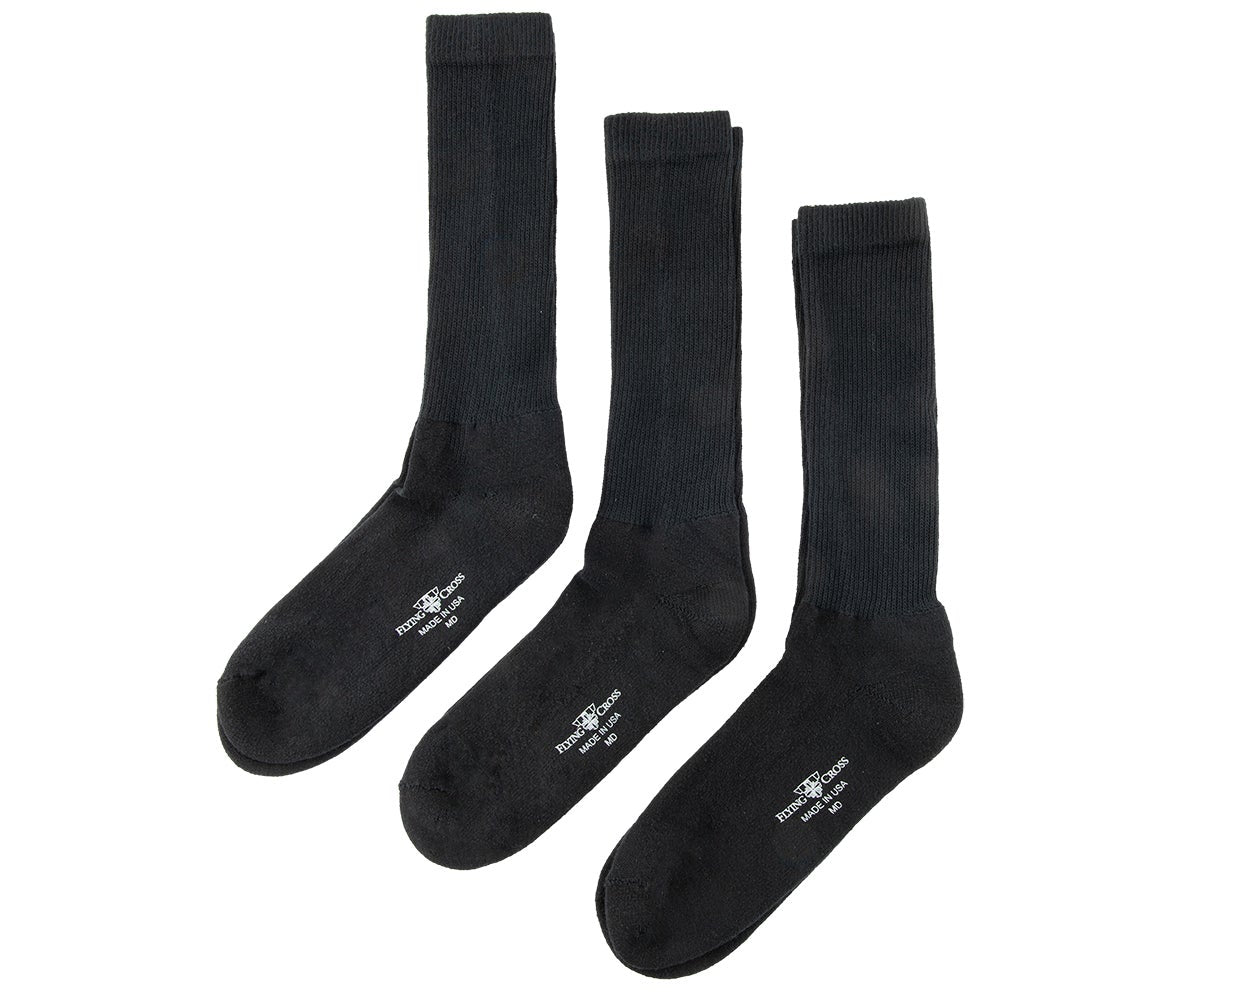 Flying Cross 3 Pack of Socks